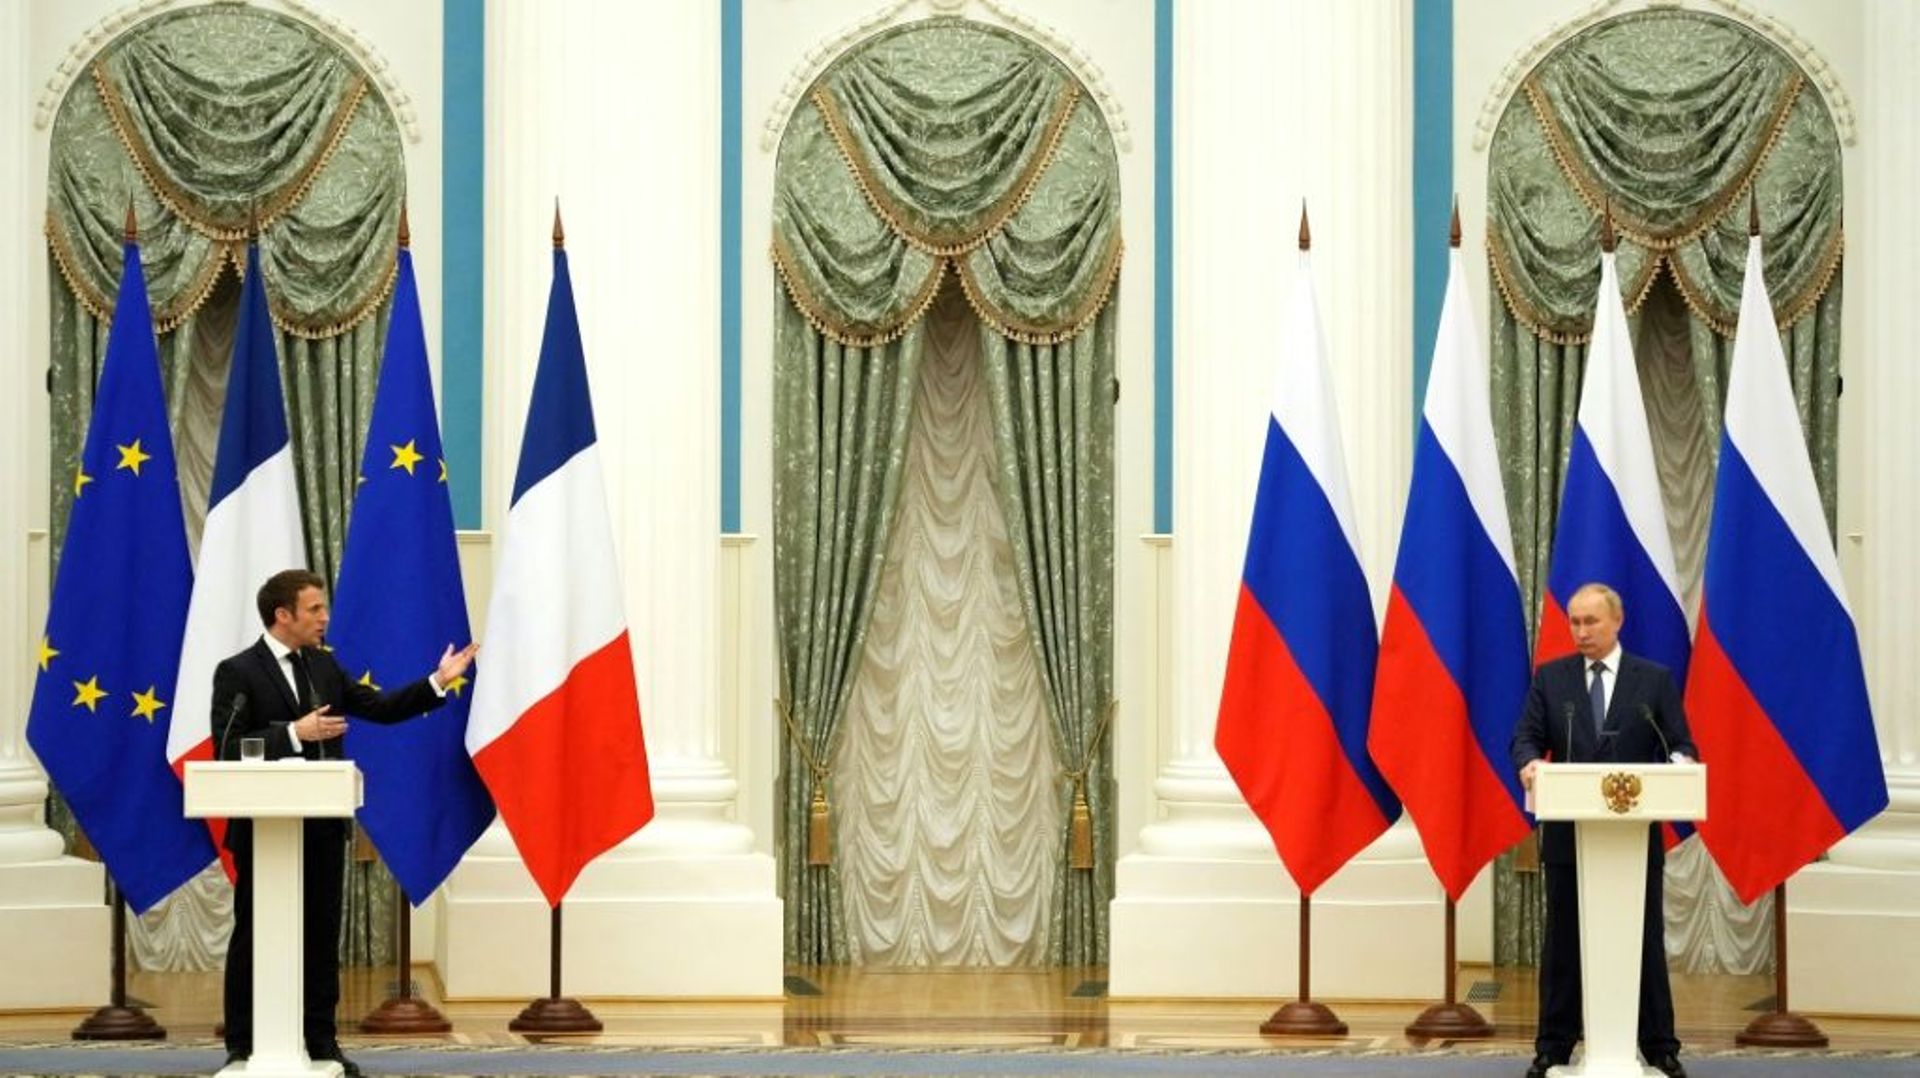 Le président russe Vladimir Poutine (D) et le président français Emmanuel Macron tiennent une conférence de presse conjointe à Moscou, le 7 février 2022